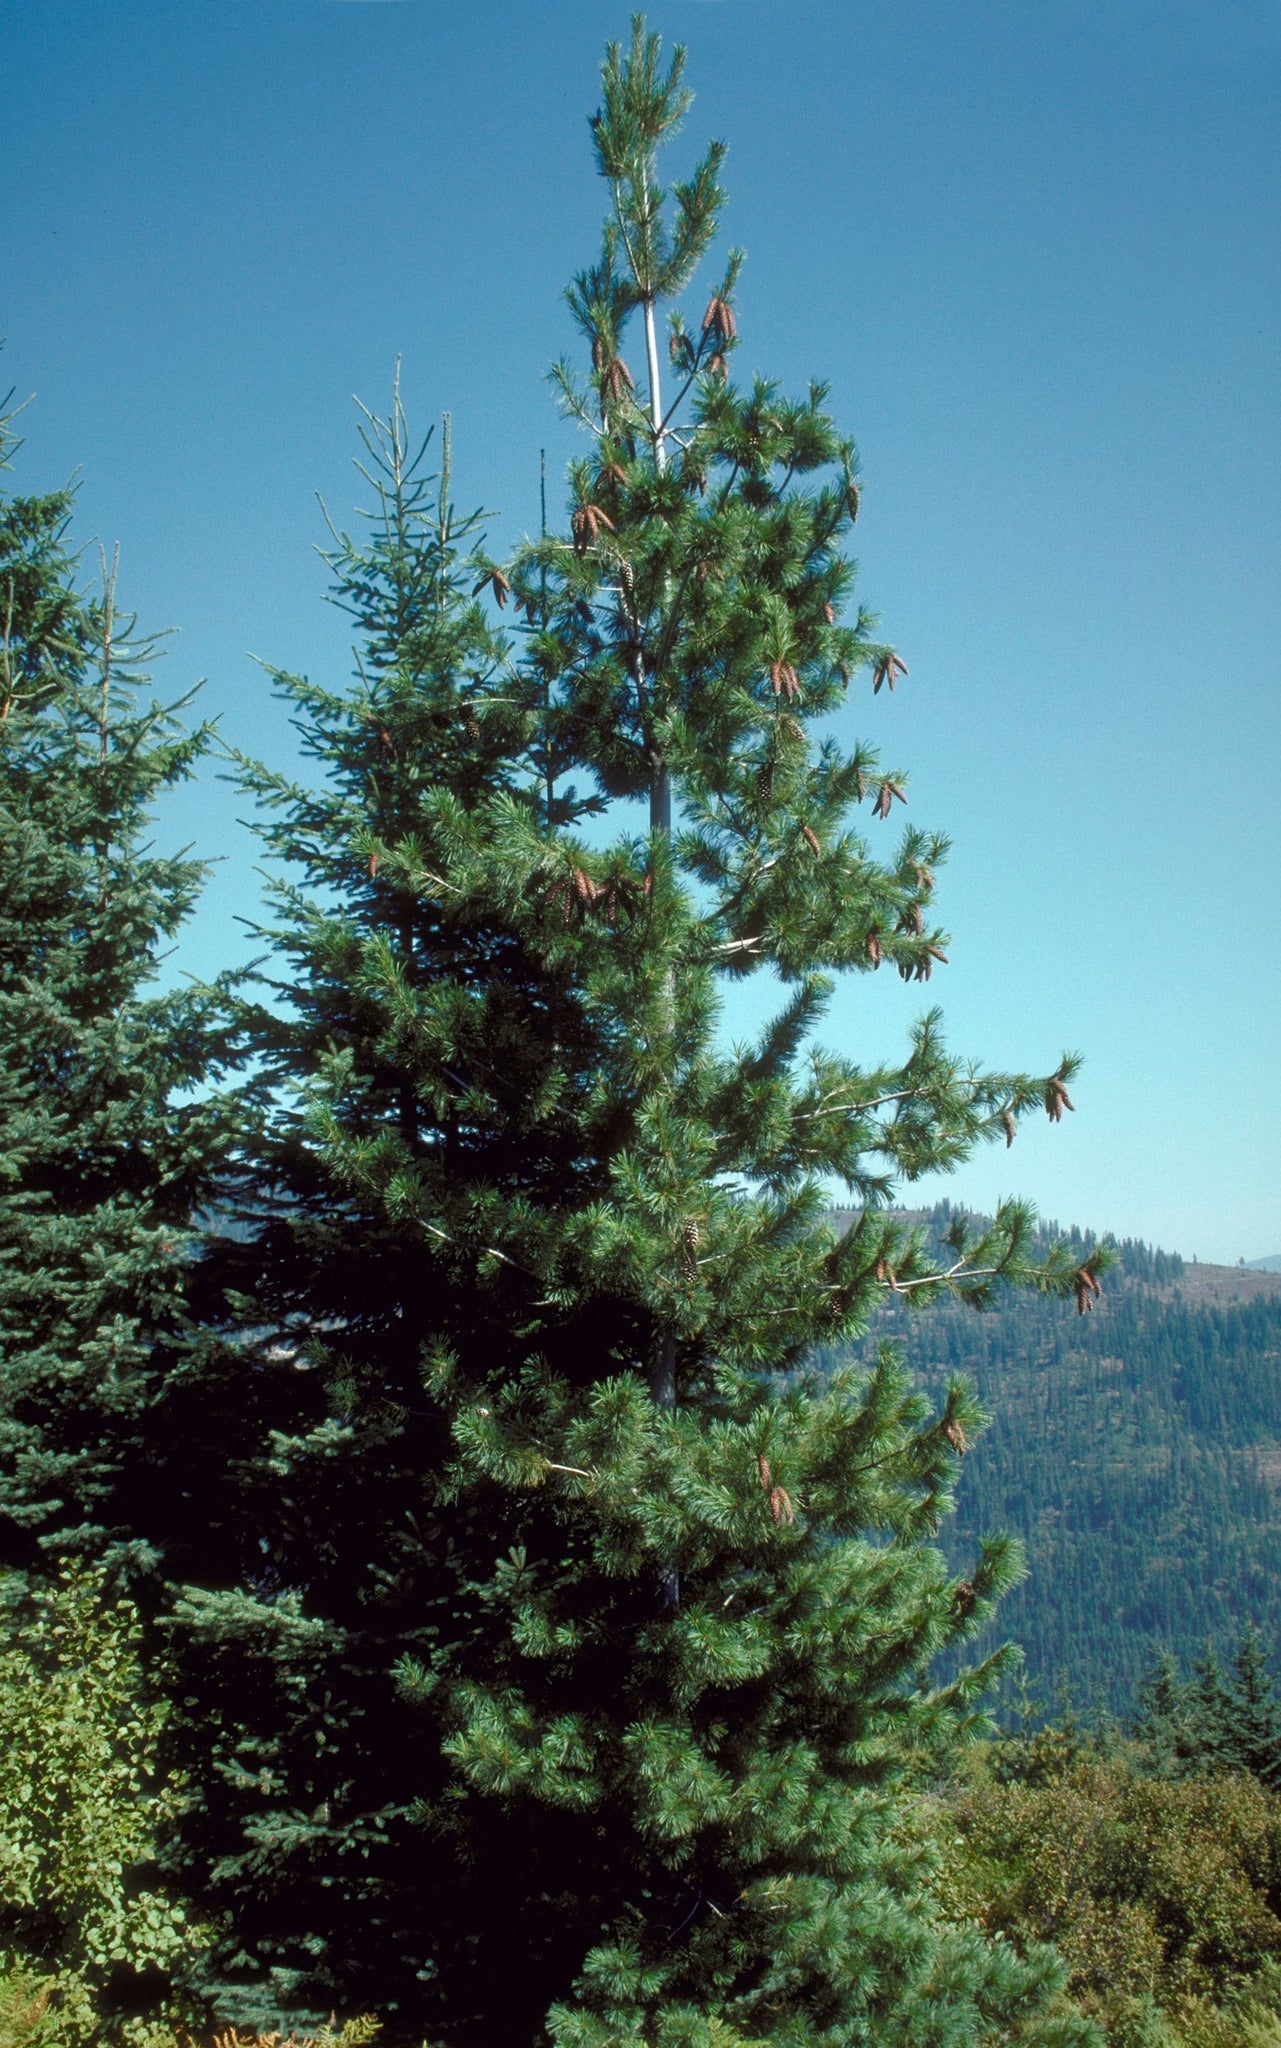 Western White Pine